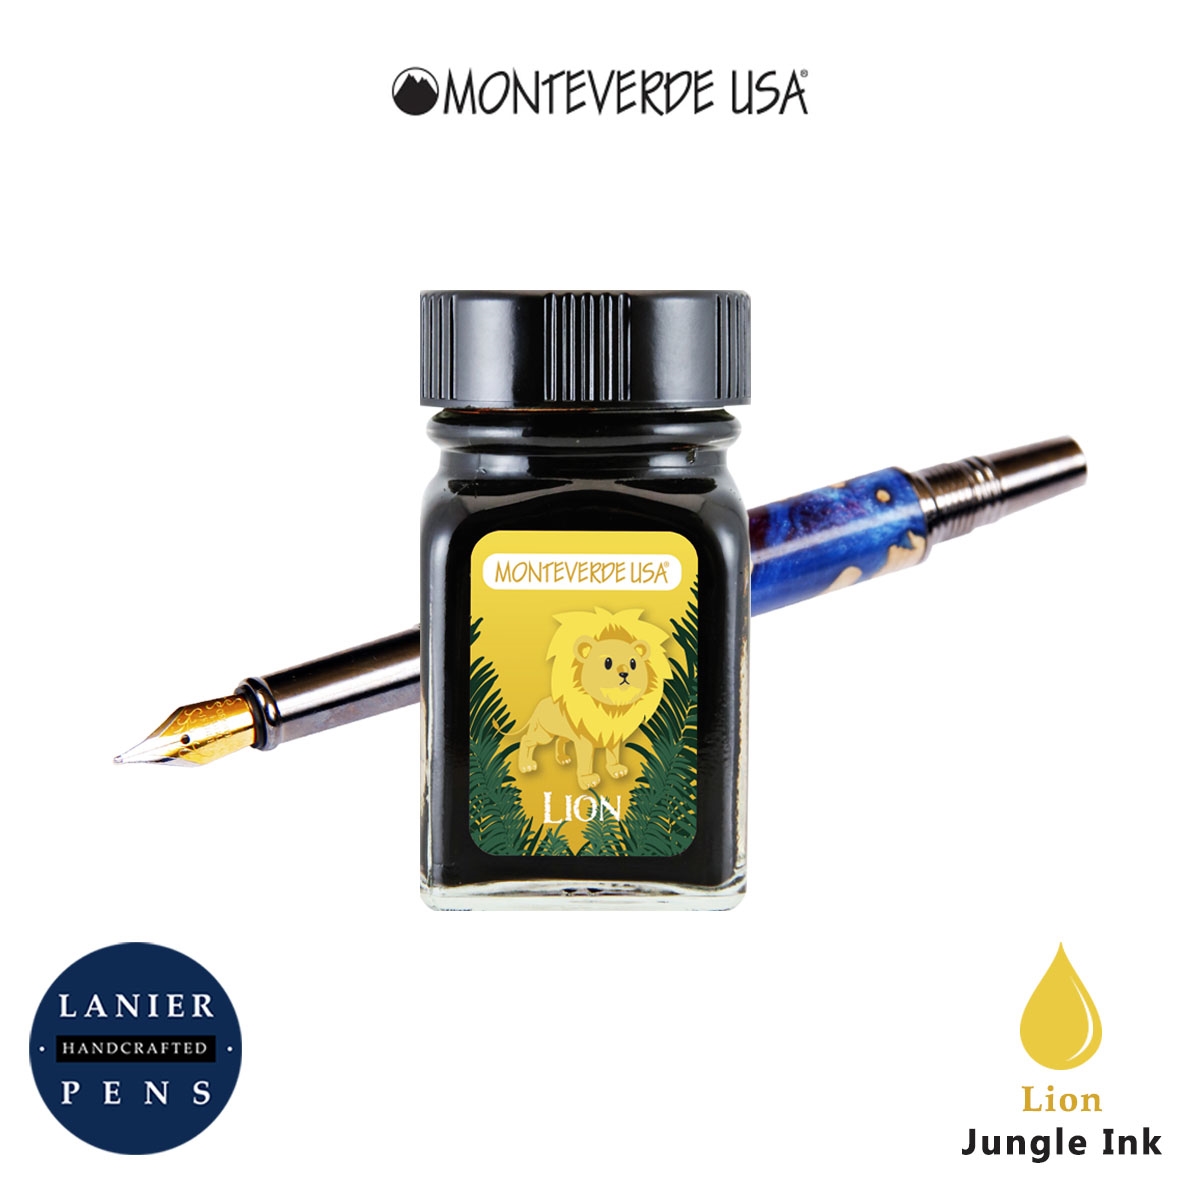 Monteverde G309LI 30 ml Jungle Fountain Pen Ink Bottle - Lion (Yellow)